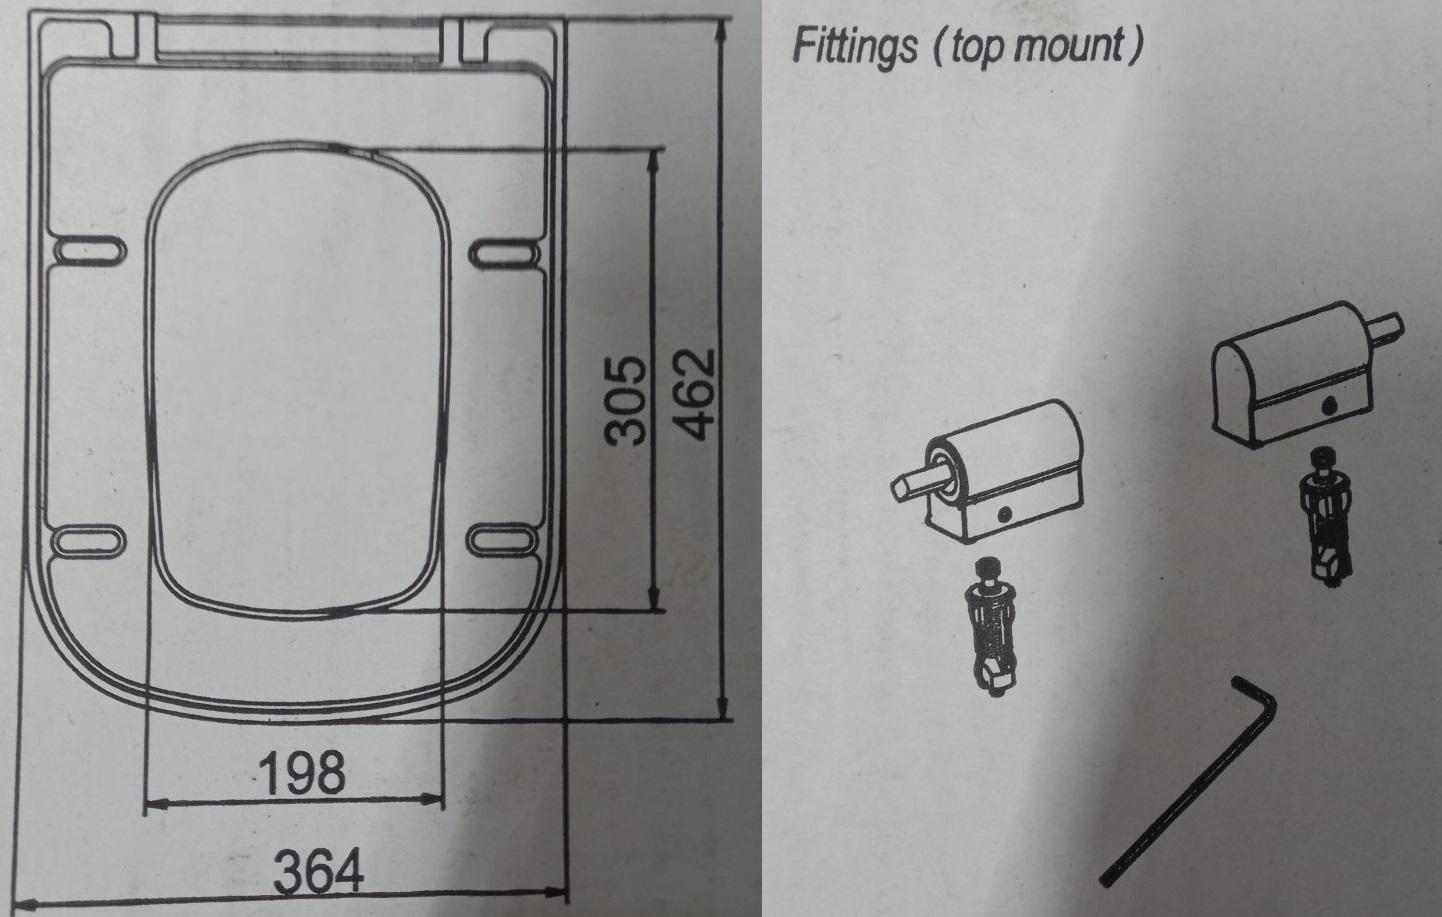 verve toilet seat diagram size dimensions